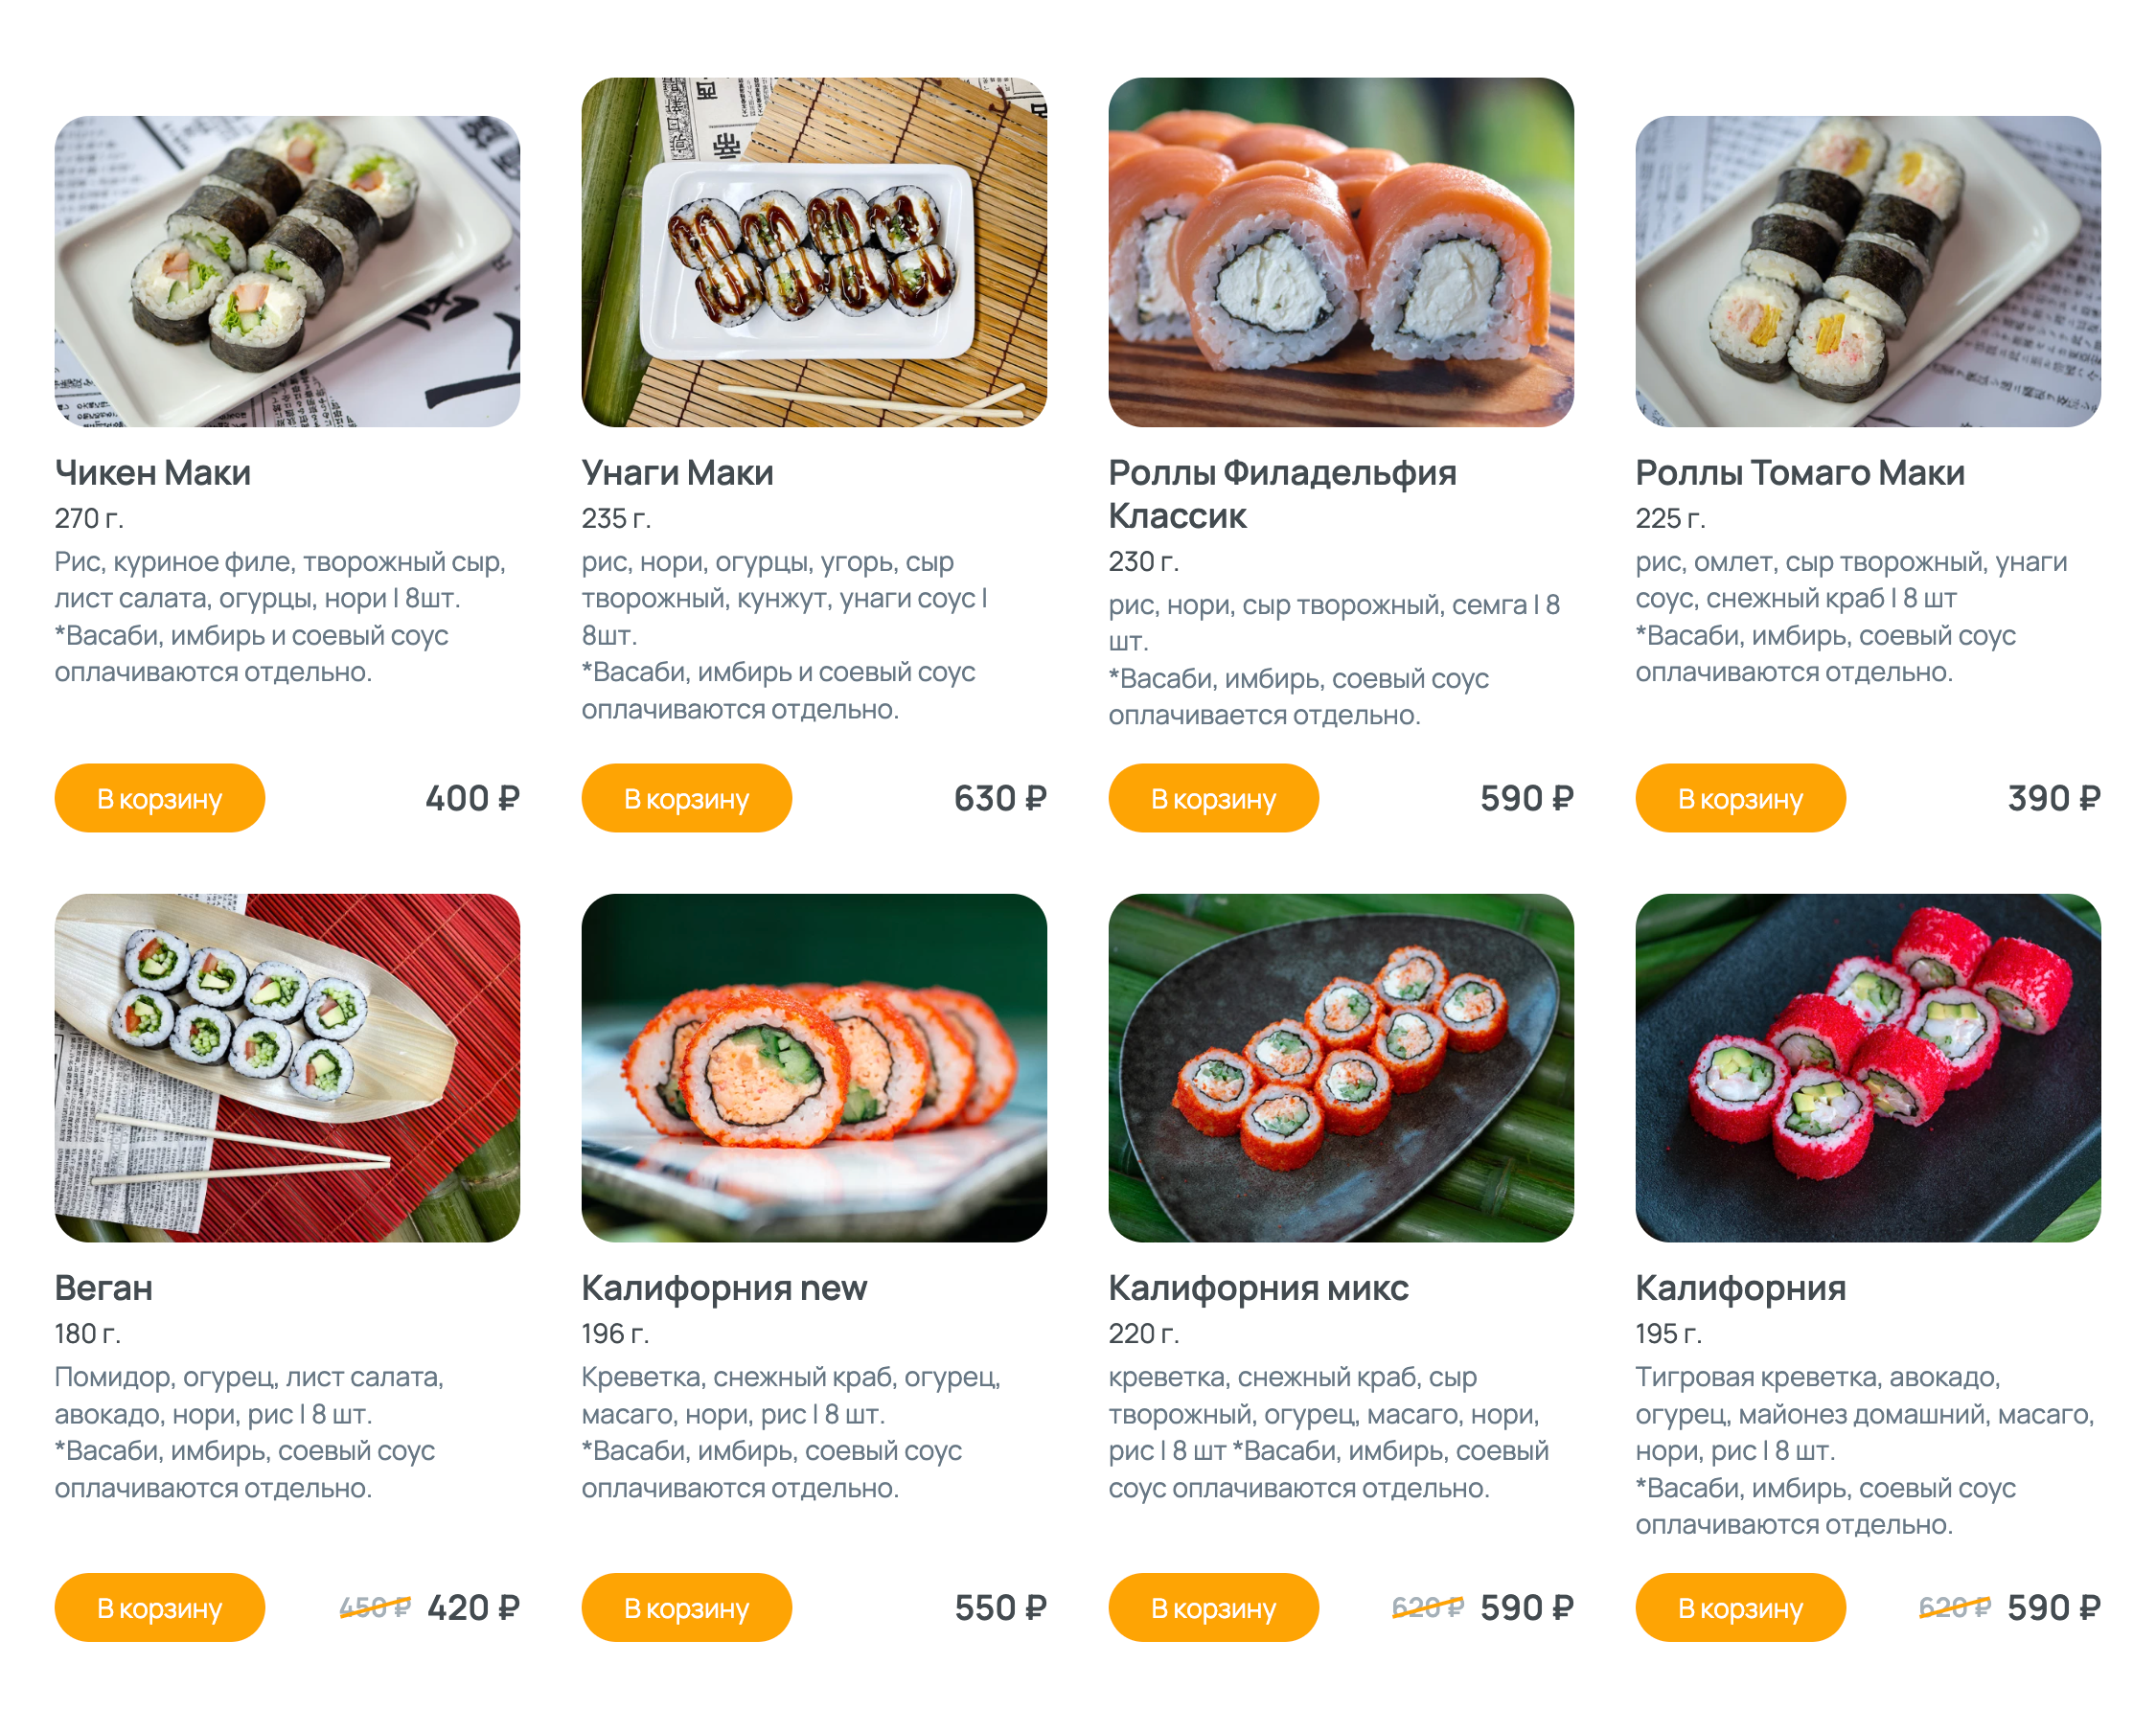 Роллы от «Воки-Токи», но в целом на сайте есть полный набор блюд японской кухни: суши, сашими, рамены, гунканы. Источник: wokitoki.club